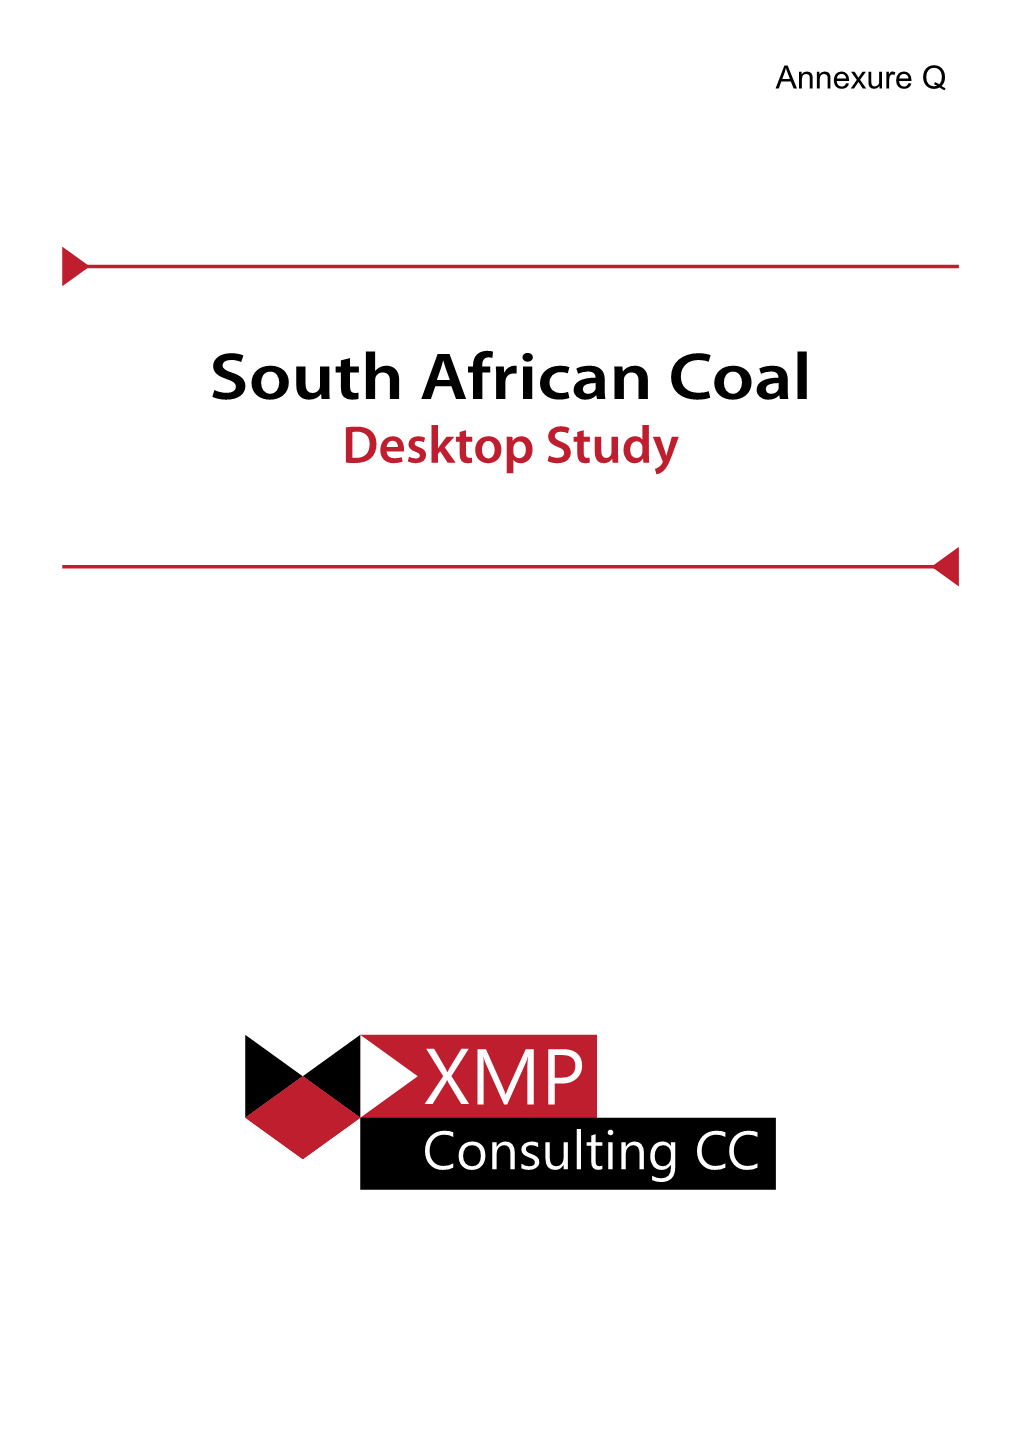 South African Coal Desktop Study INDEX